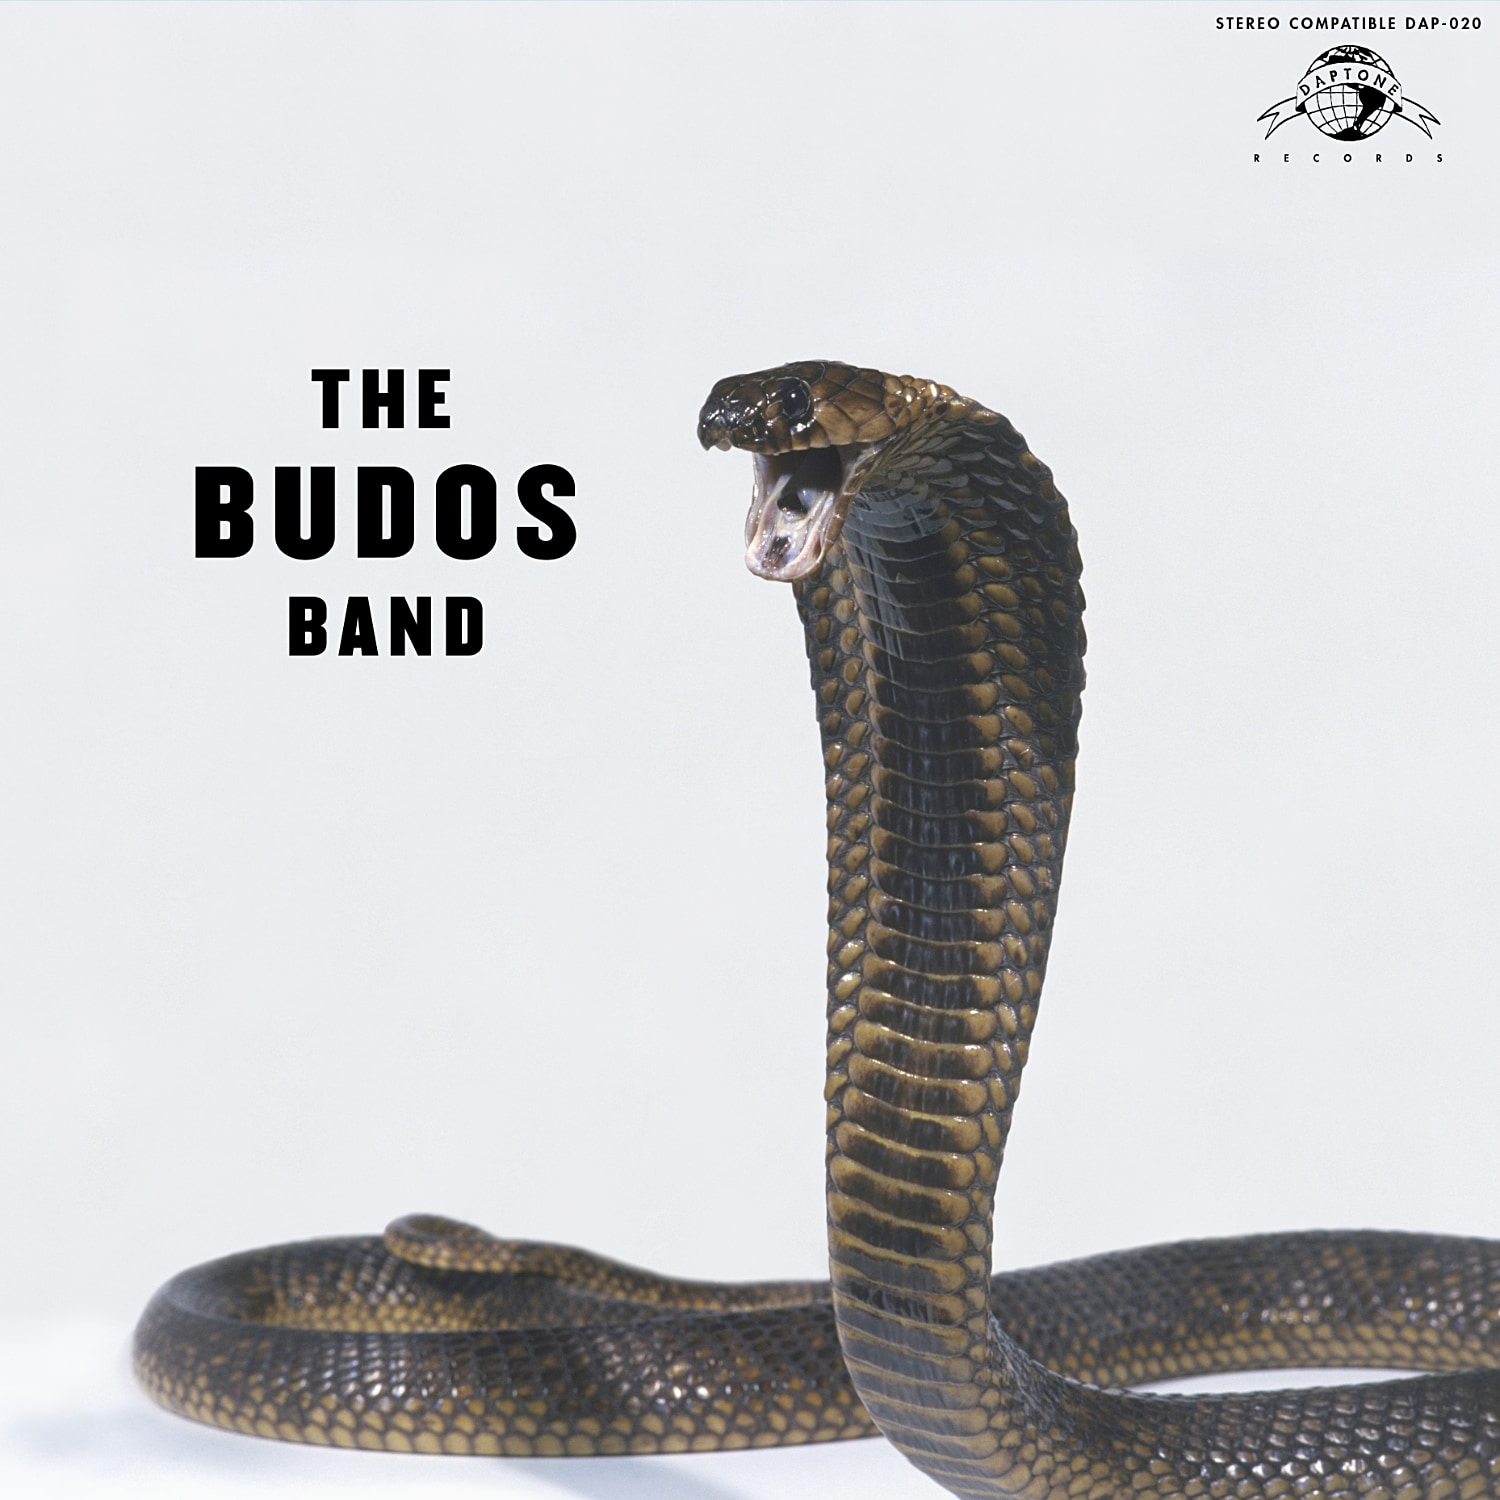 The Budos Band - The Budos Band III